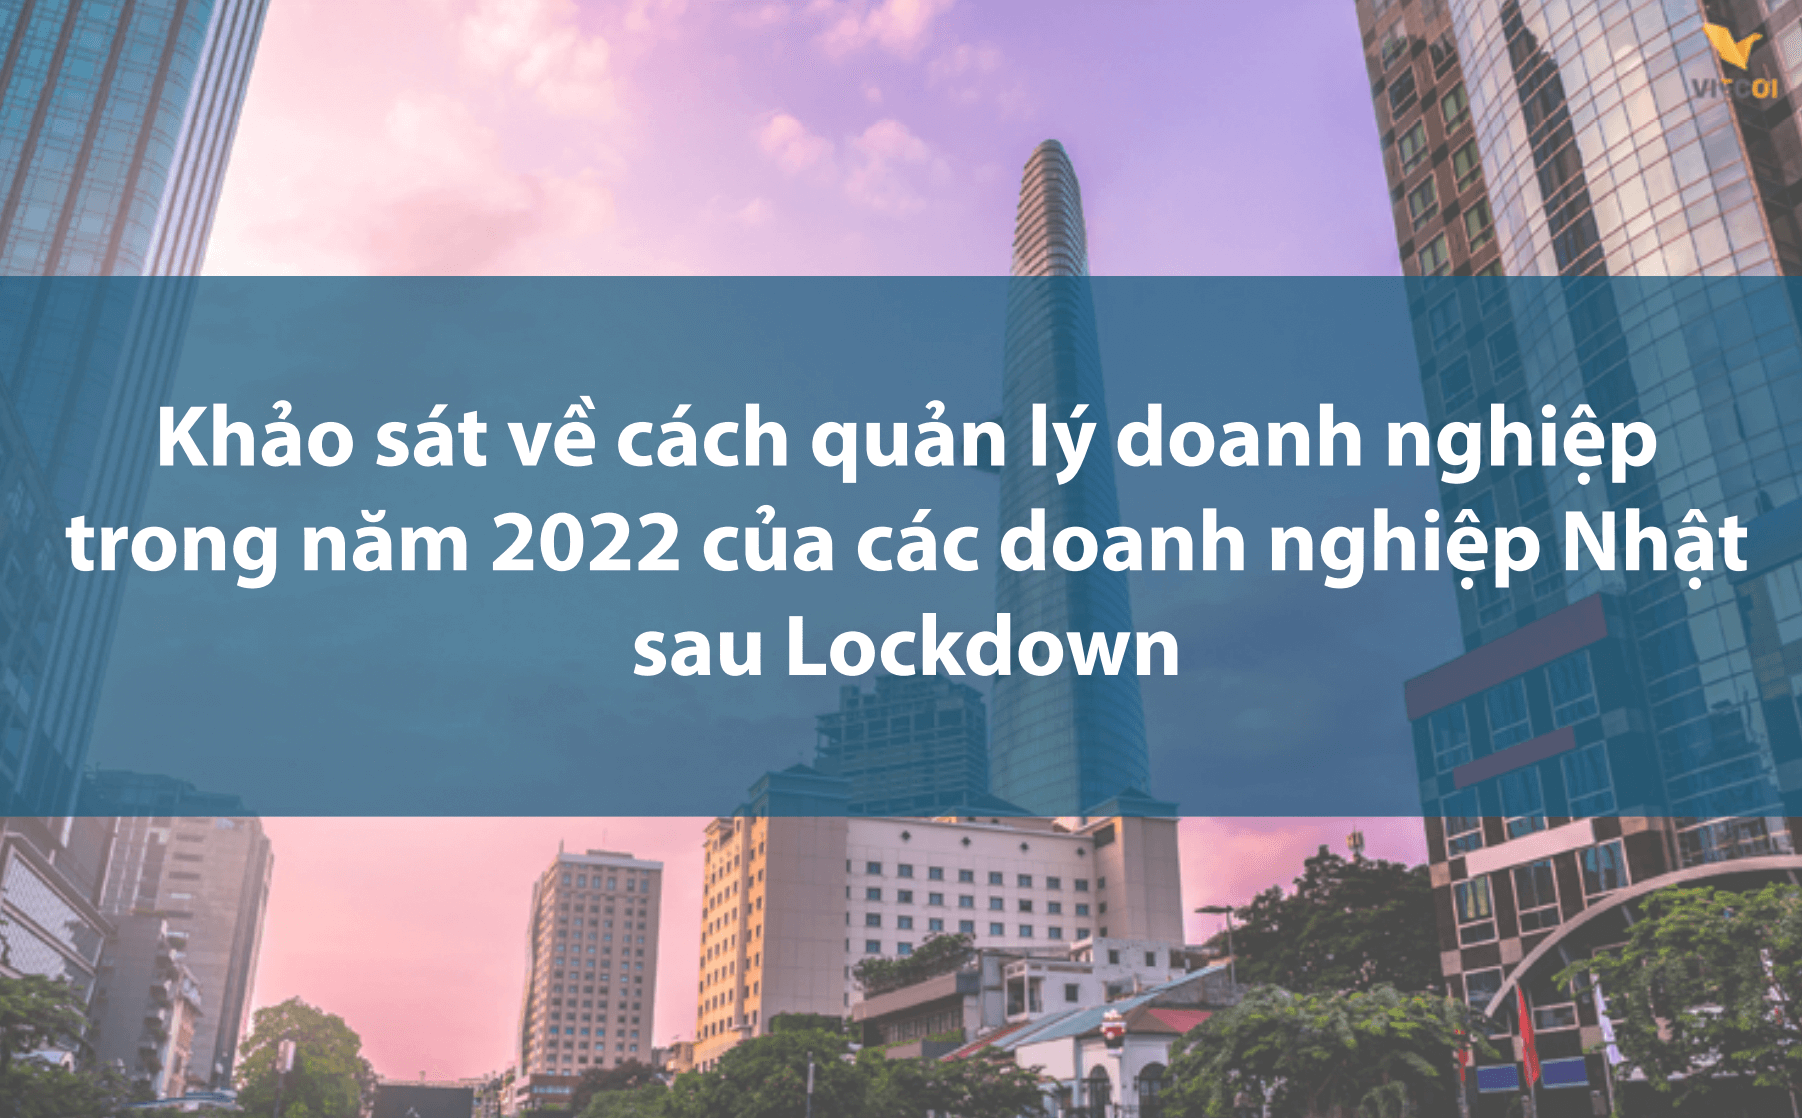 【Ebook】Khảo sát về cách quản lý doanh nghiệp trong năm 2022 của các doanh nghiệp sau Lockdown